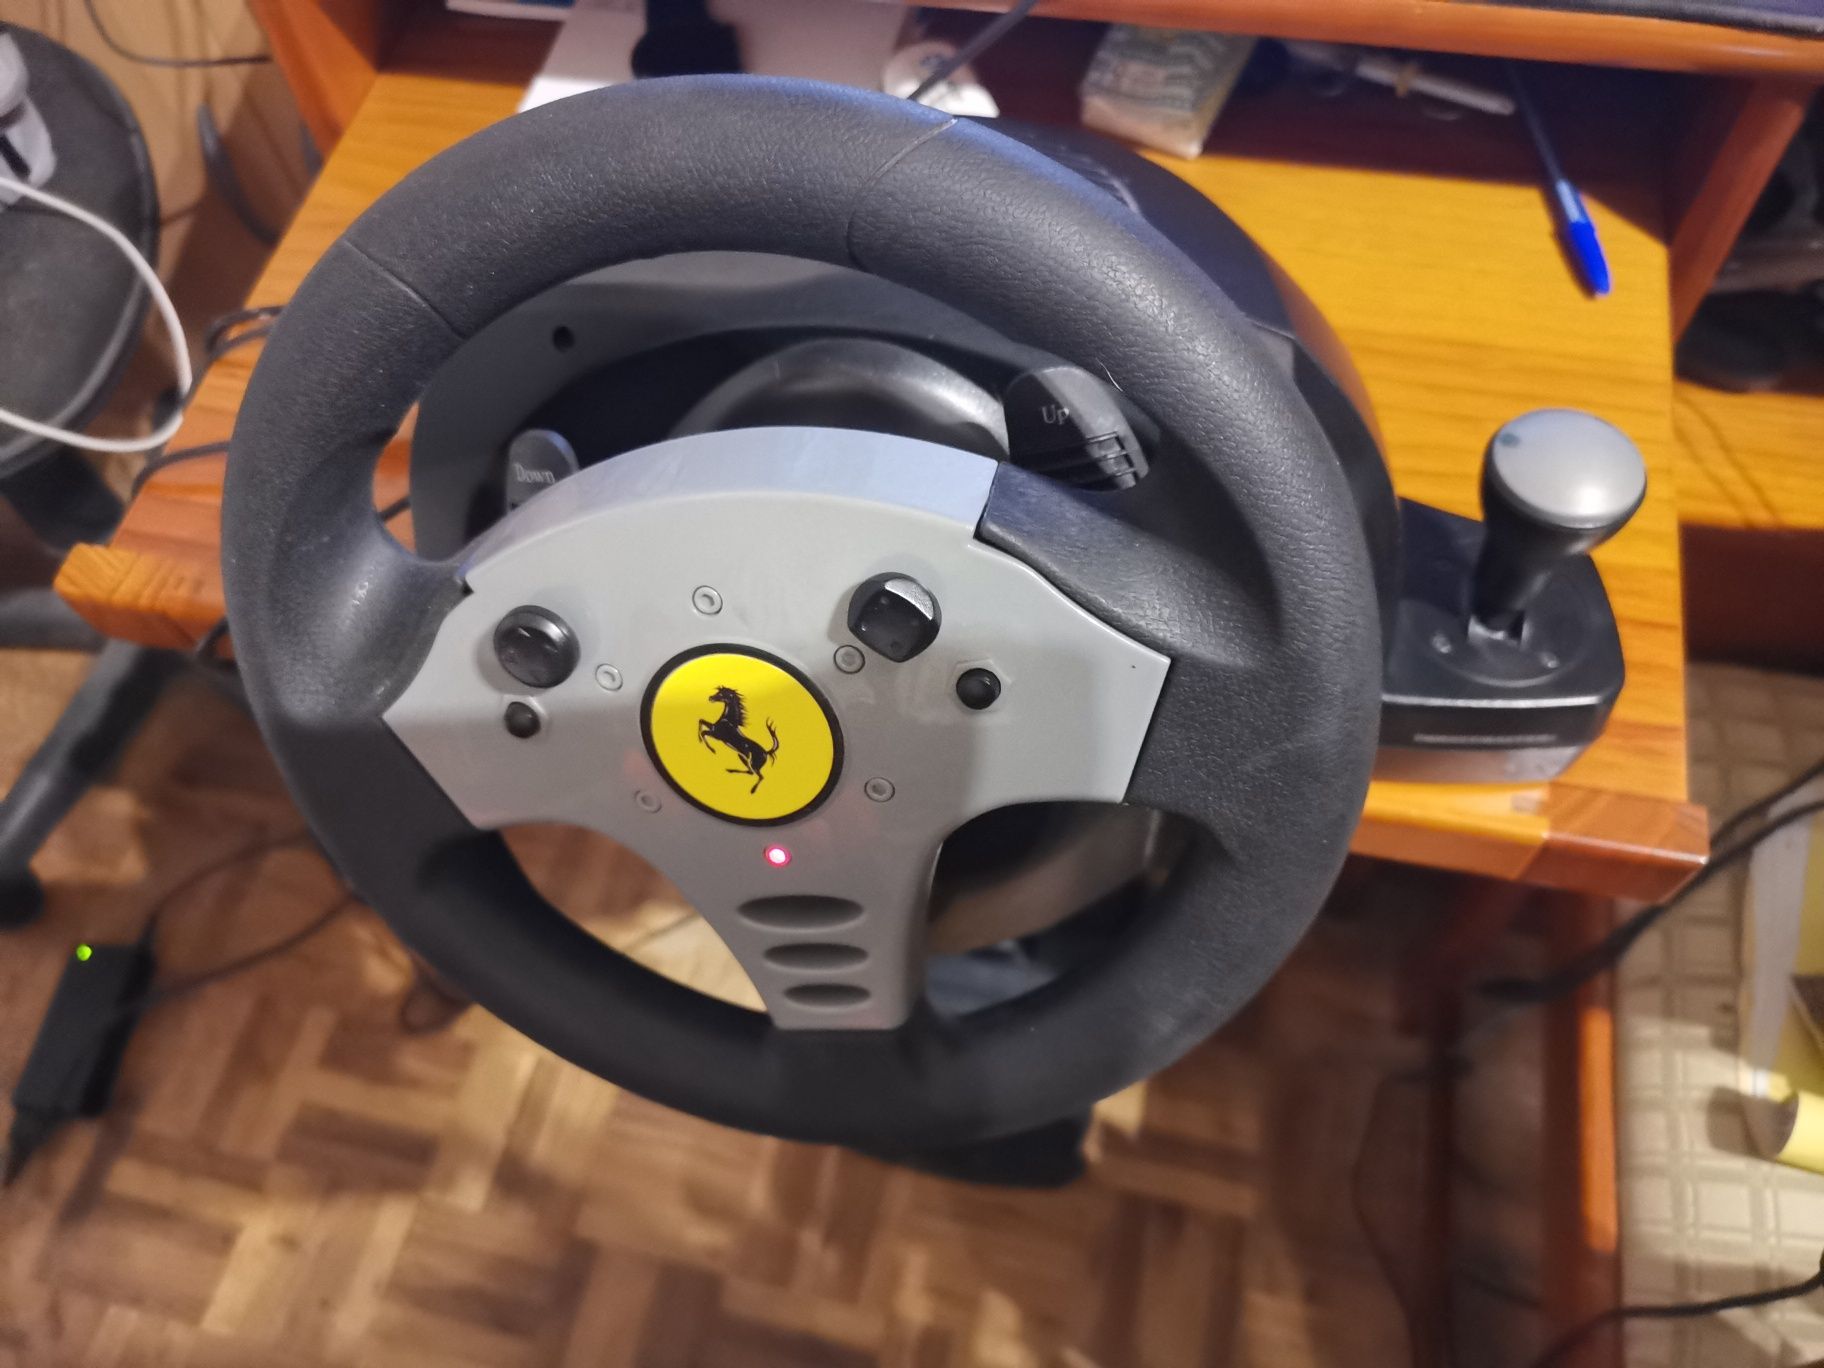 Ferrari force feedback racing wheel